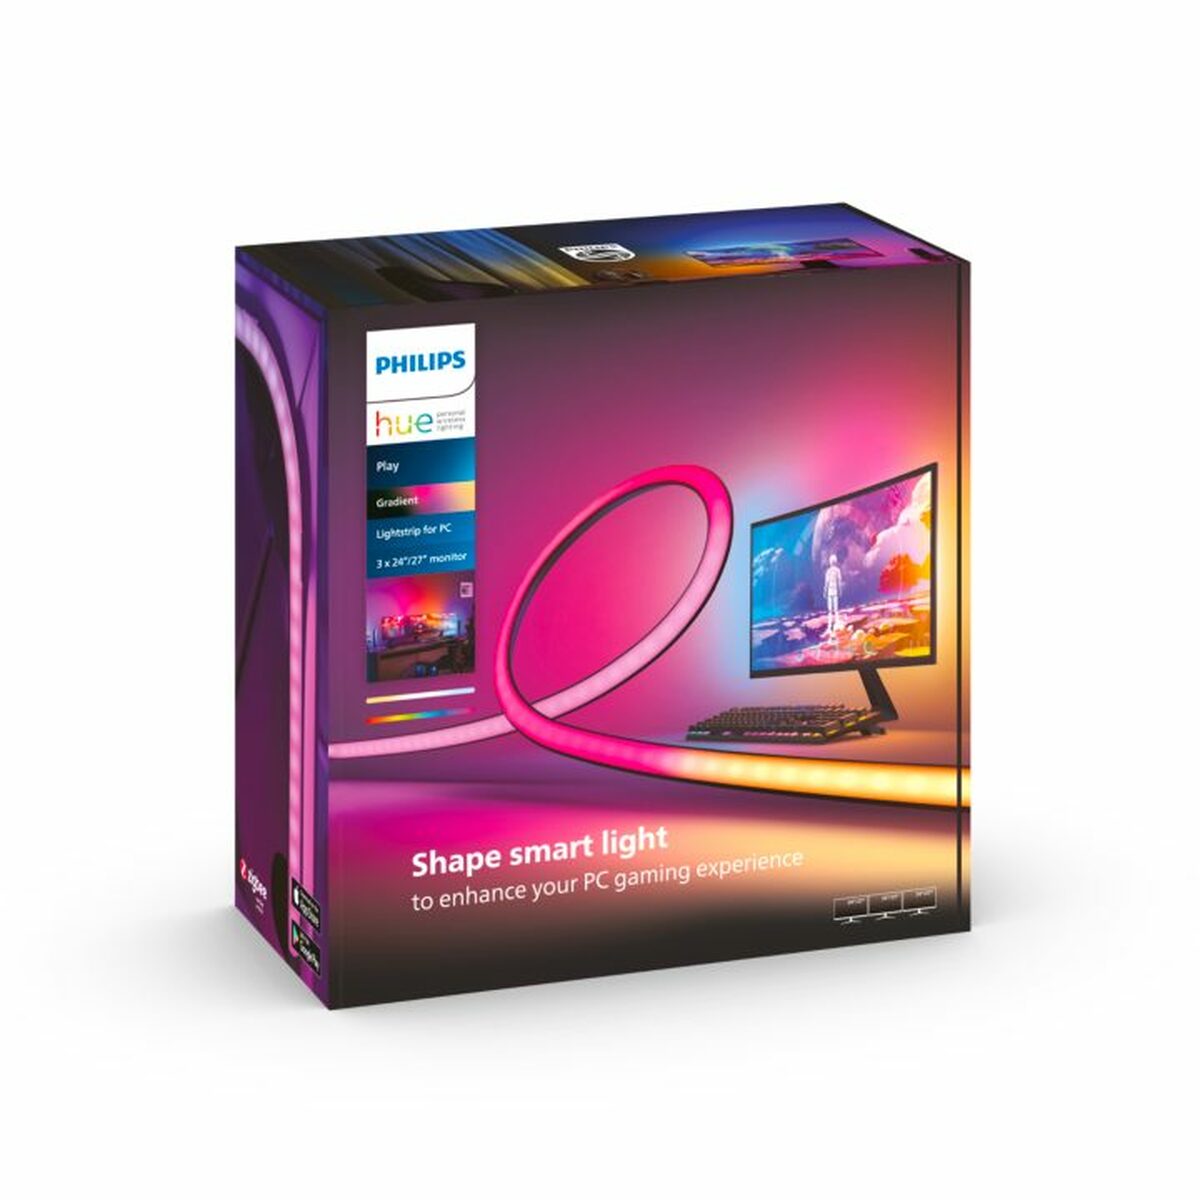 Moniteur PC Pack Gaming immersif - Moniteur Gigabyte 32" (LED M32U) + Pack Lightstrip PC Philips Hue 32/34" (pont de connexion et prise connectée Hue inclus)